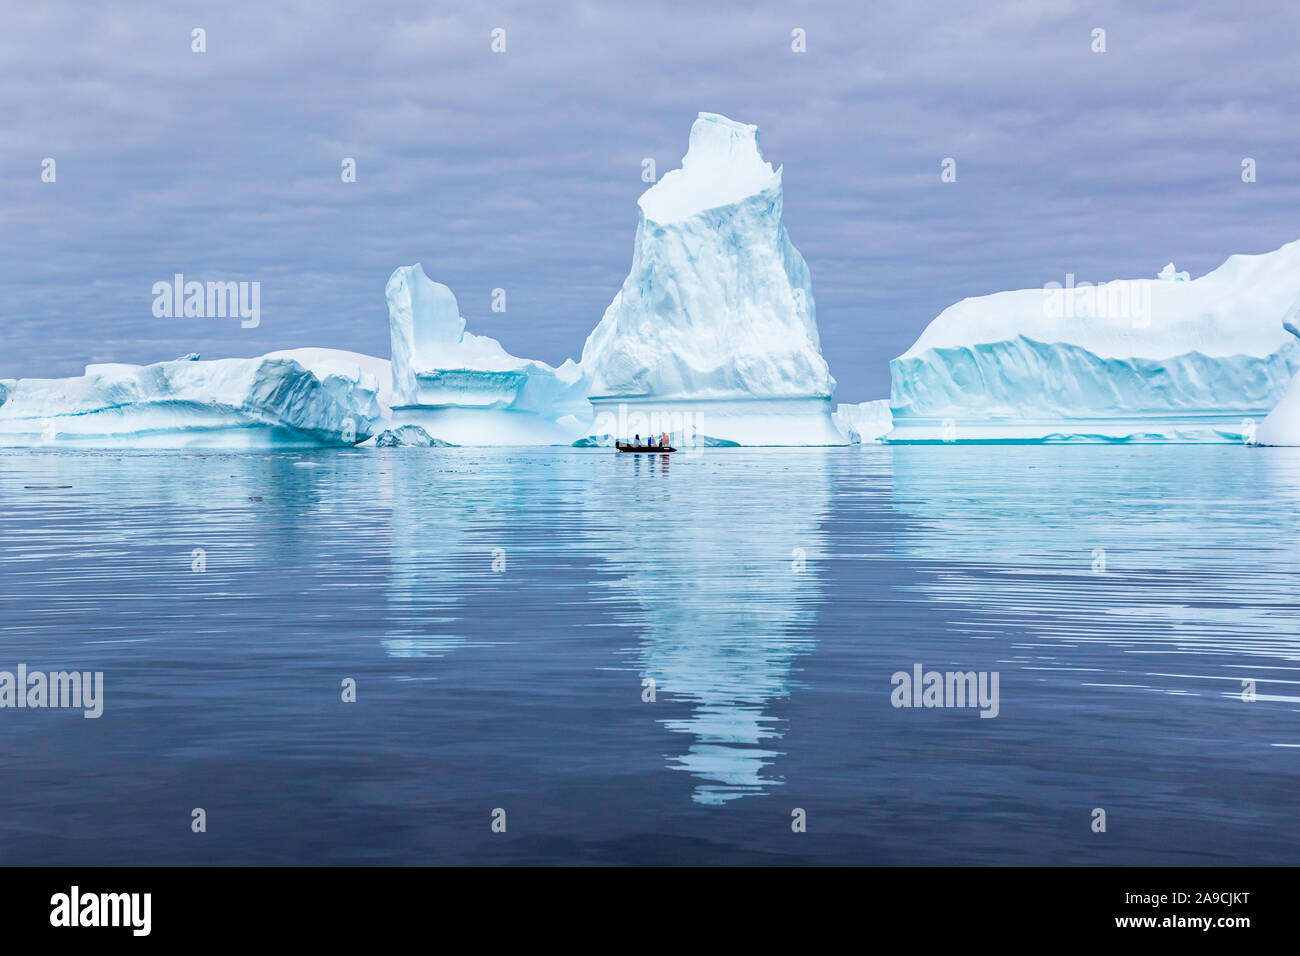 Cimitero di iceberg in Antartide con molti enorme massa di ghiaccio cordato con spettacolare paesaggio polare per turisti su barche zodiac, congelati continen Foto Stock